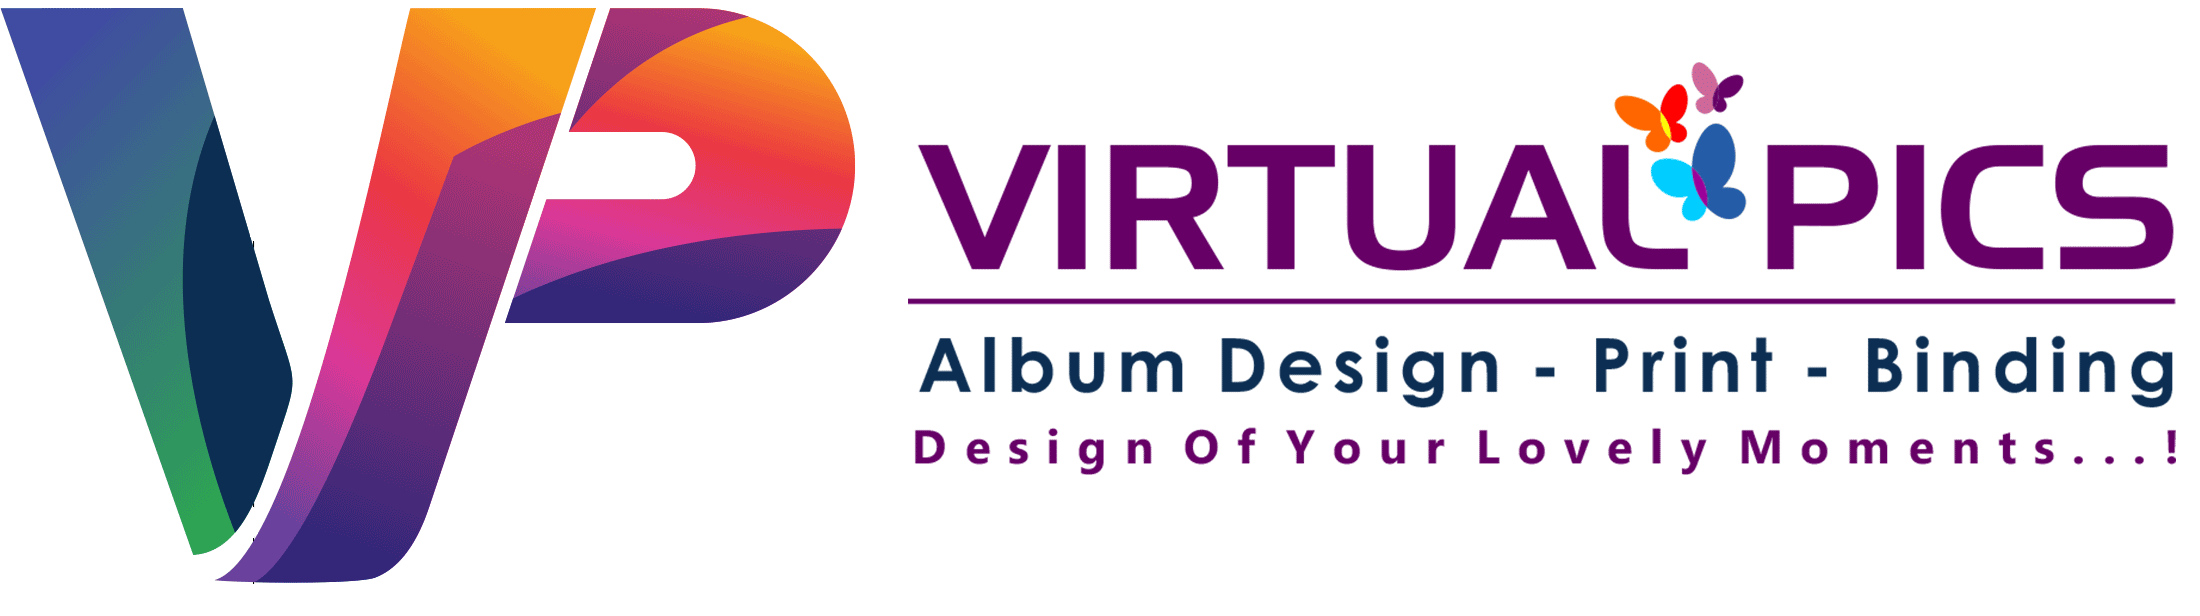 Virtual Pics - Album Design | Print | Binding